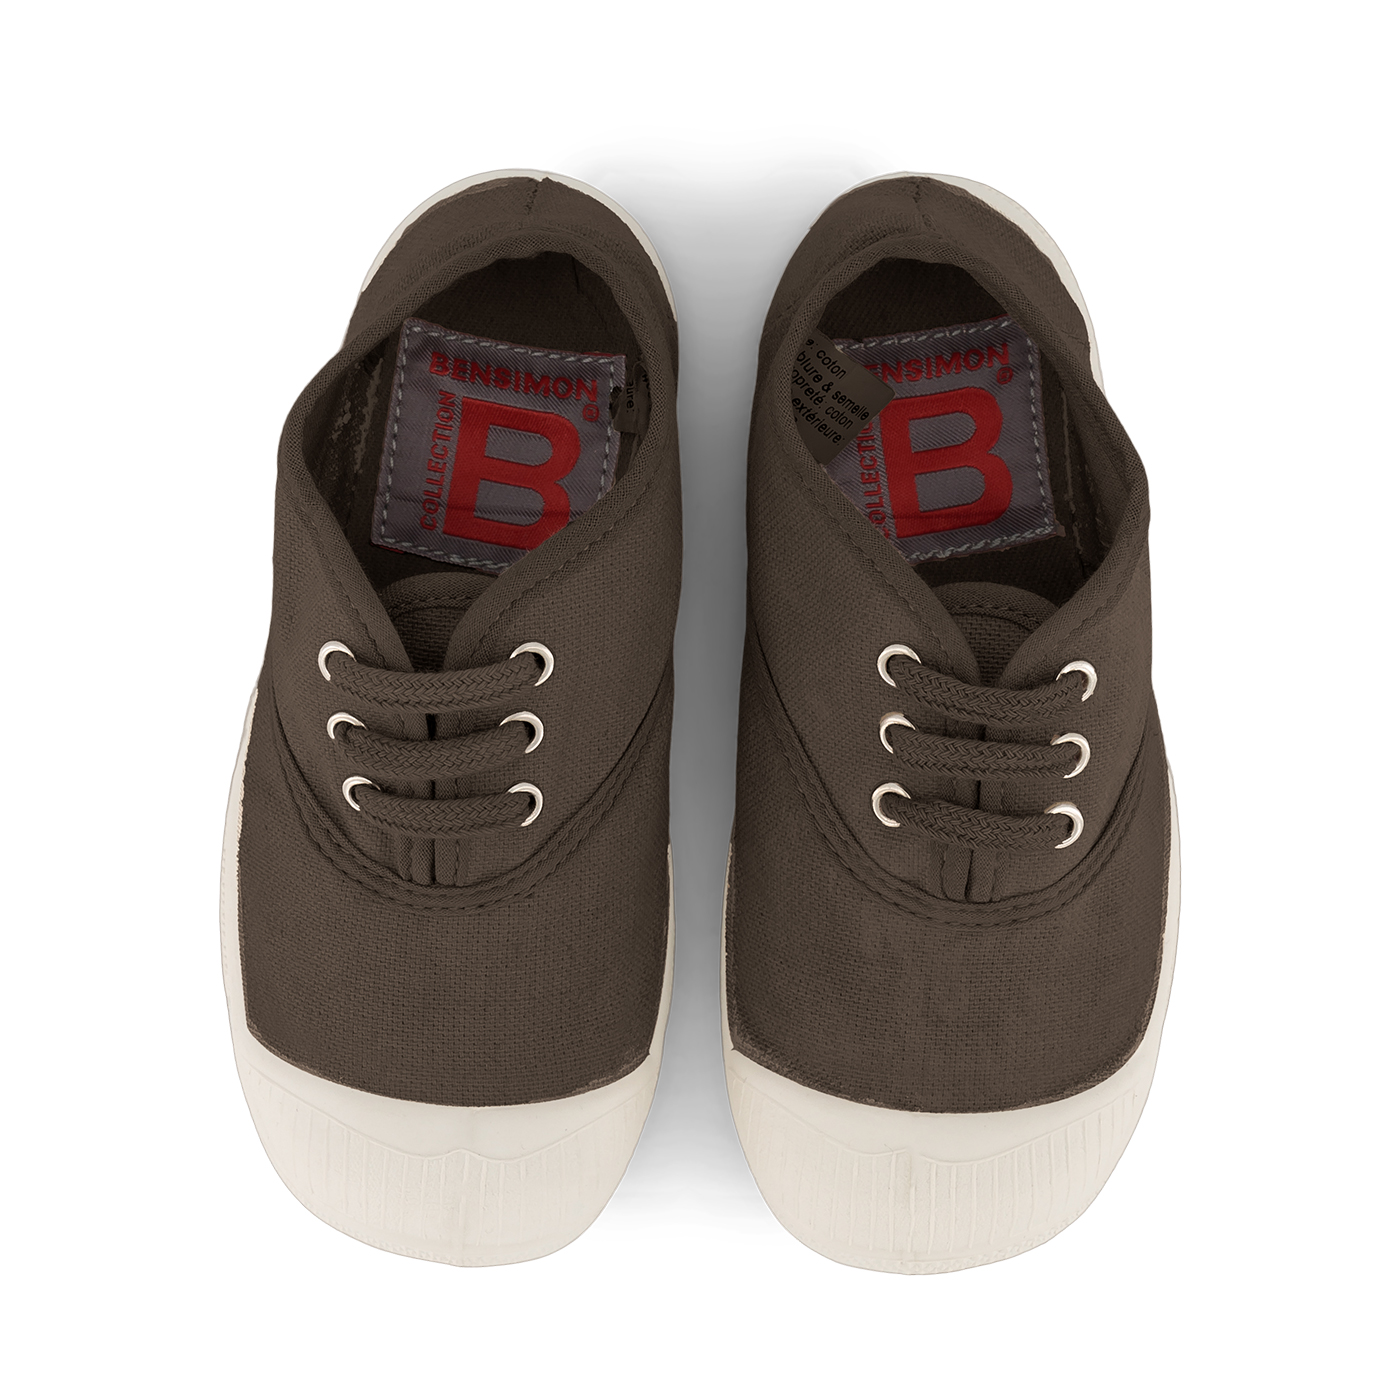  Bensimon Lacet Çocuk Spor Ayakkabı  | Khaki